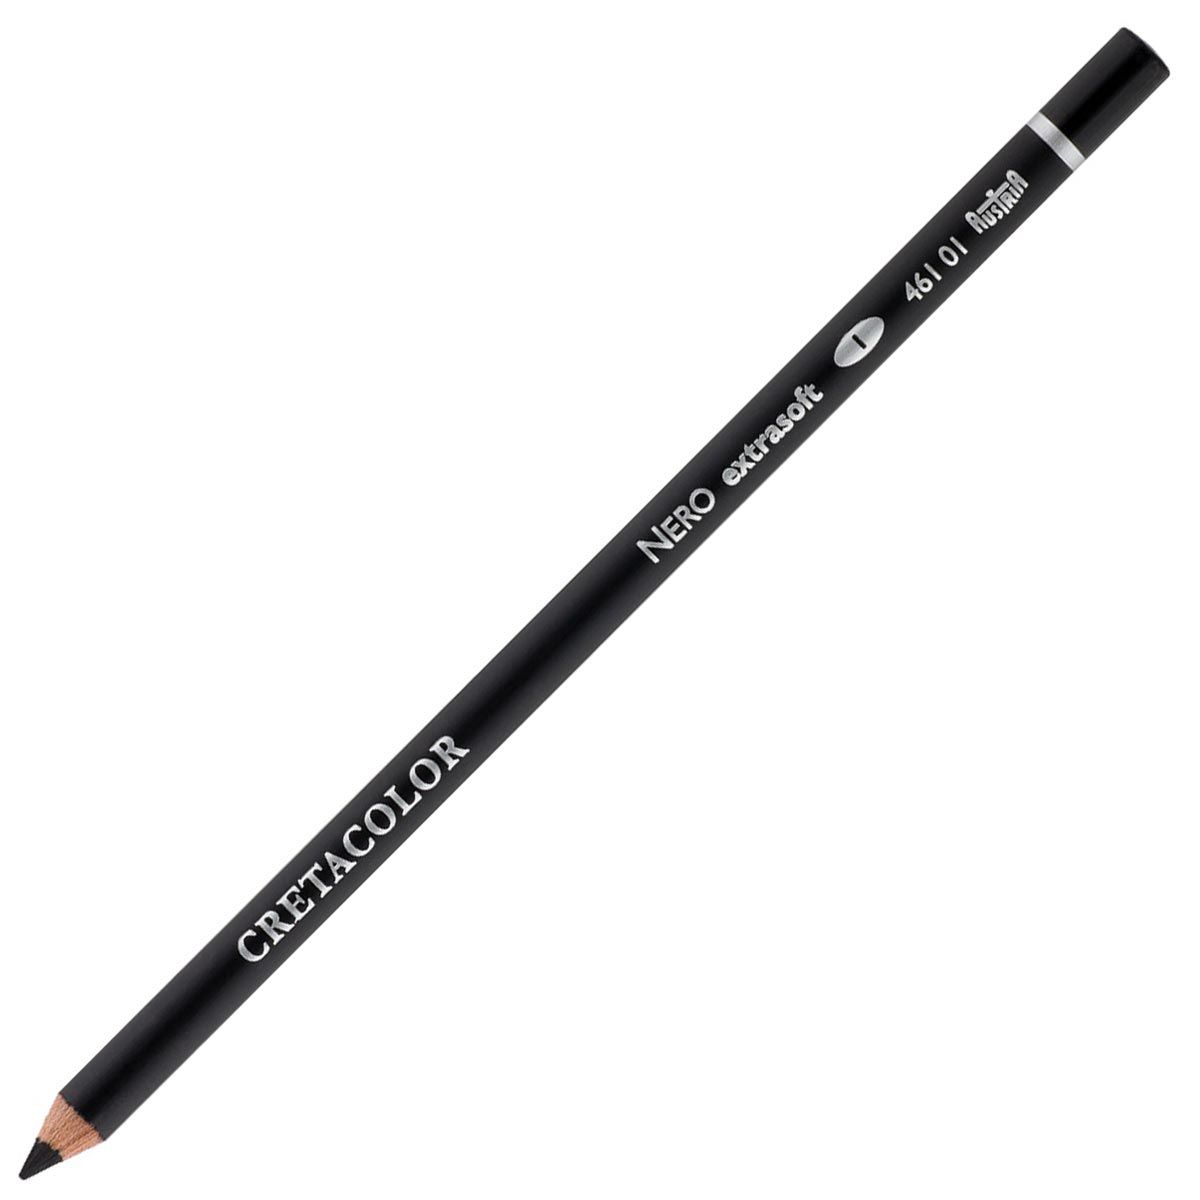 Cretacolor Nero Drawing Pencil - Extra Soft